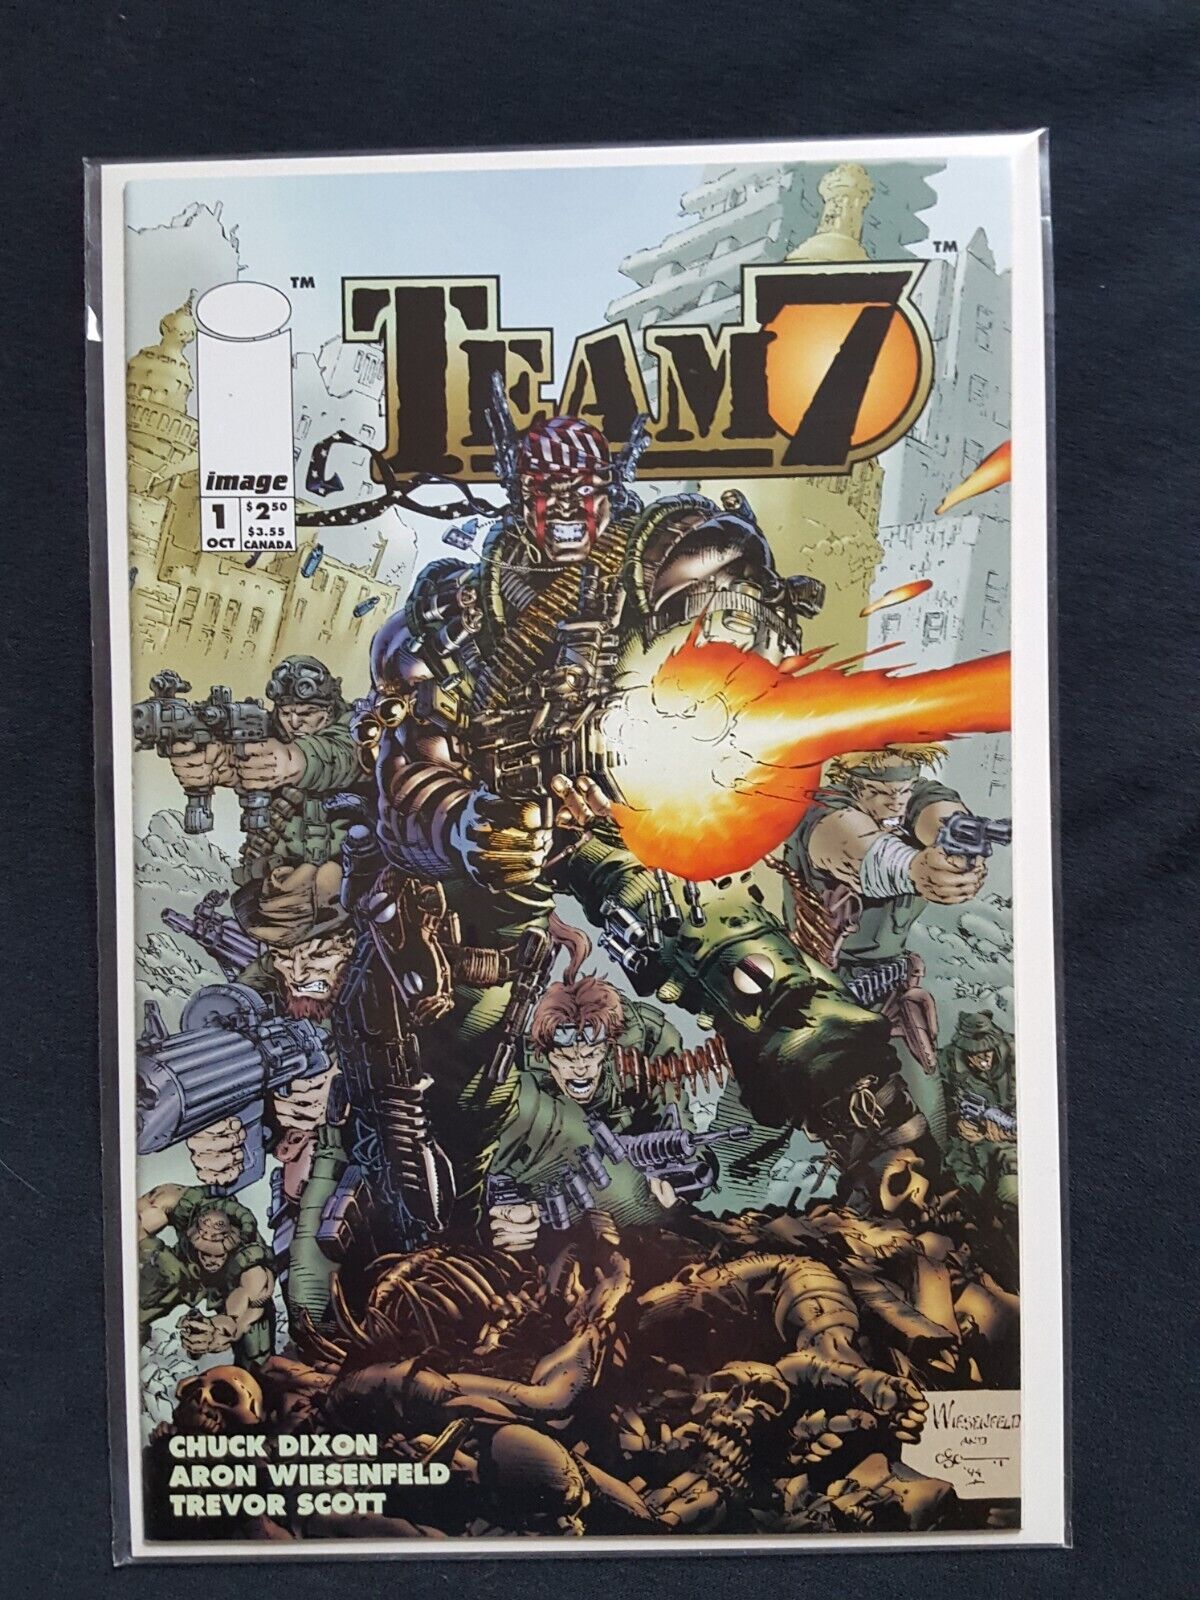 TEAM 7 #1 (1994) Image Comics   MINT   UNREAD    ORIGINAL OWNER